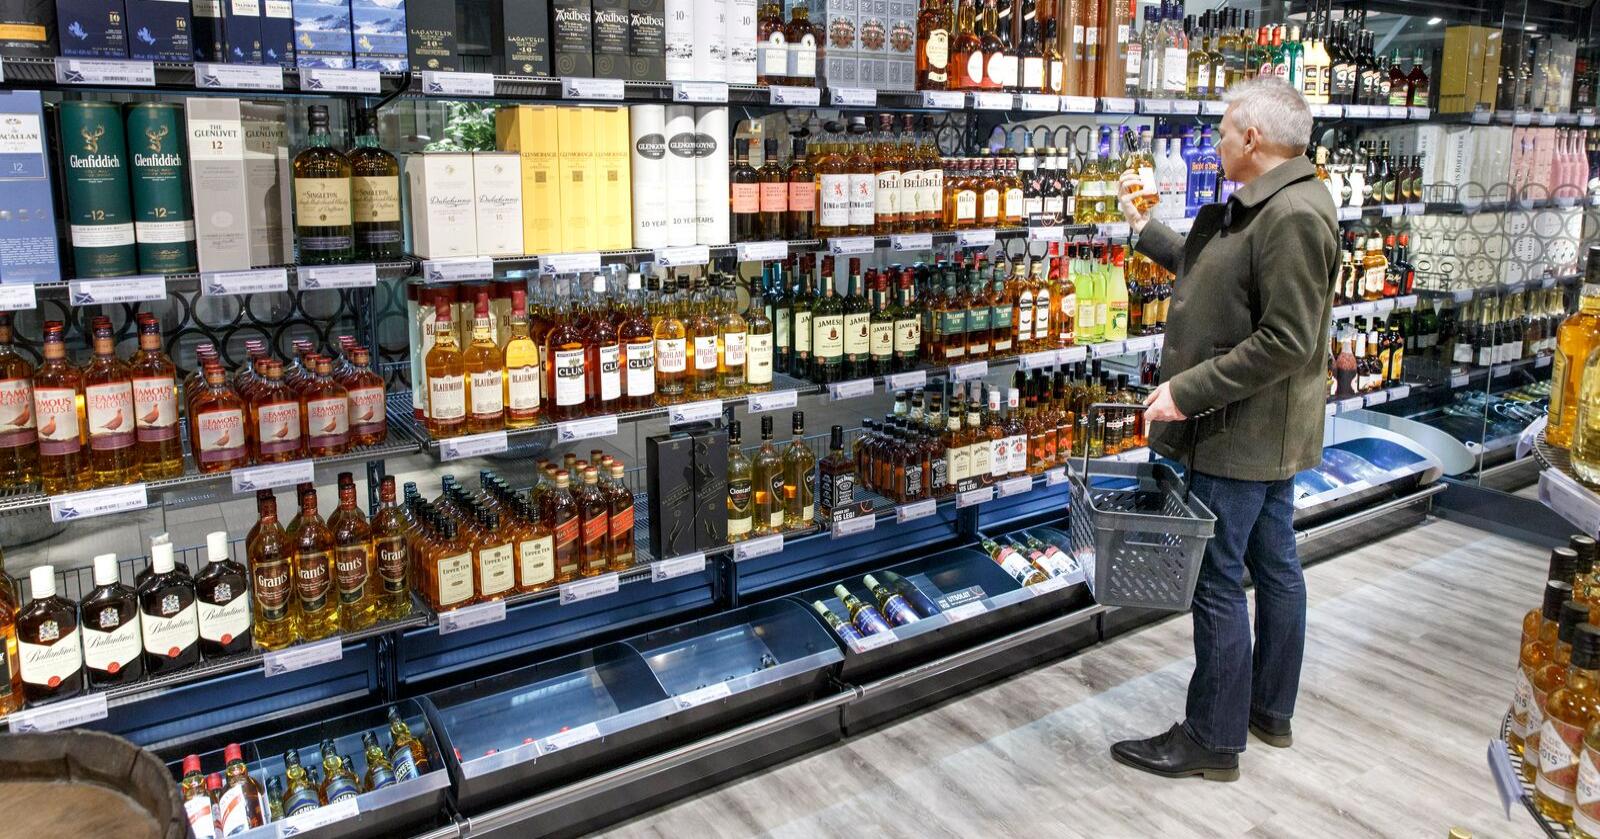 Minstepris på alkoholenheter vil særlig gjøre sterkt alkoholholdig drikke dyrere og være et viktig bidrag til å fremme folkehelsa, mener Verdens helseorganisasjon (WHO). Illustrasjonsfoto: Gorm Kallestad/NTB